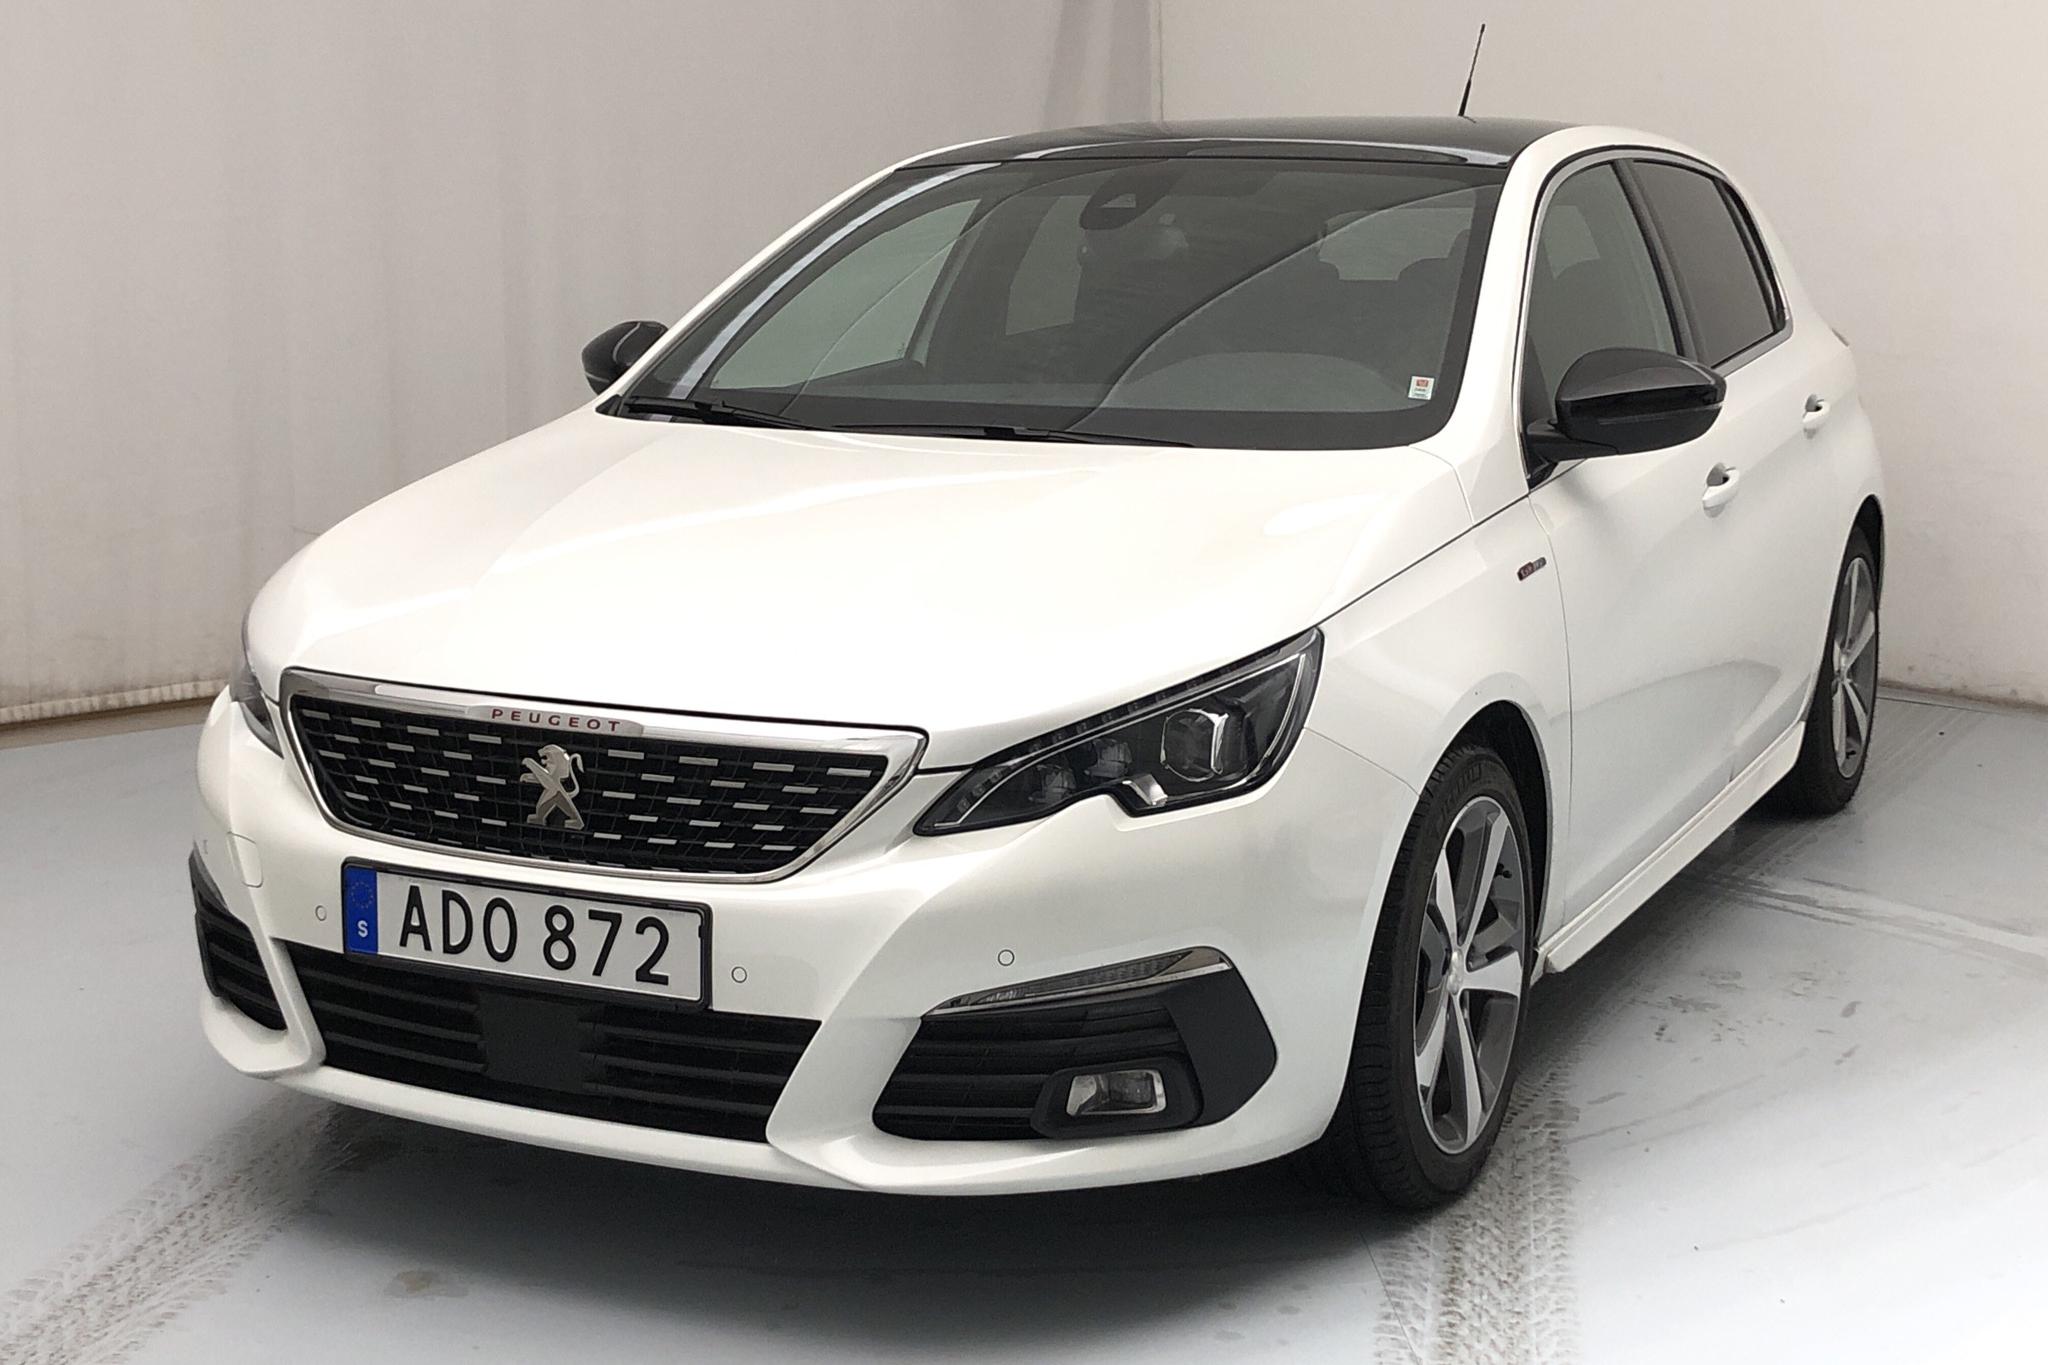 Peugeot 308 PureTech 5dr (130hk) - 18 000 km - Automatic - white - 2020